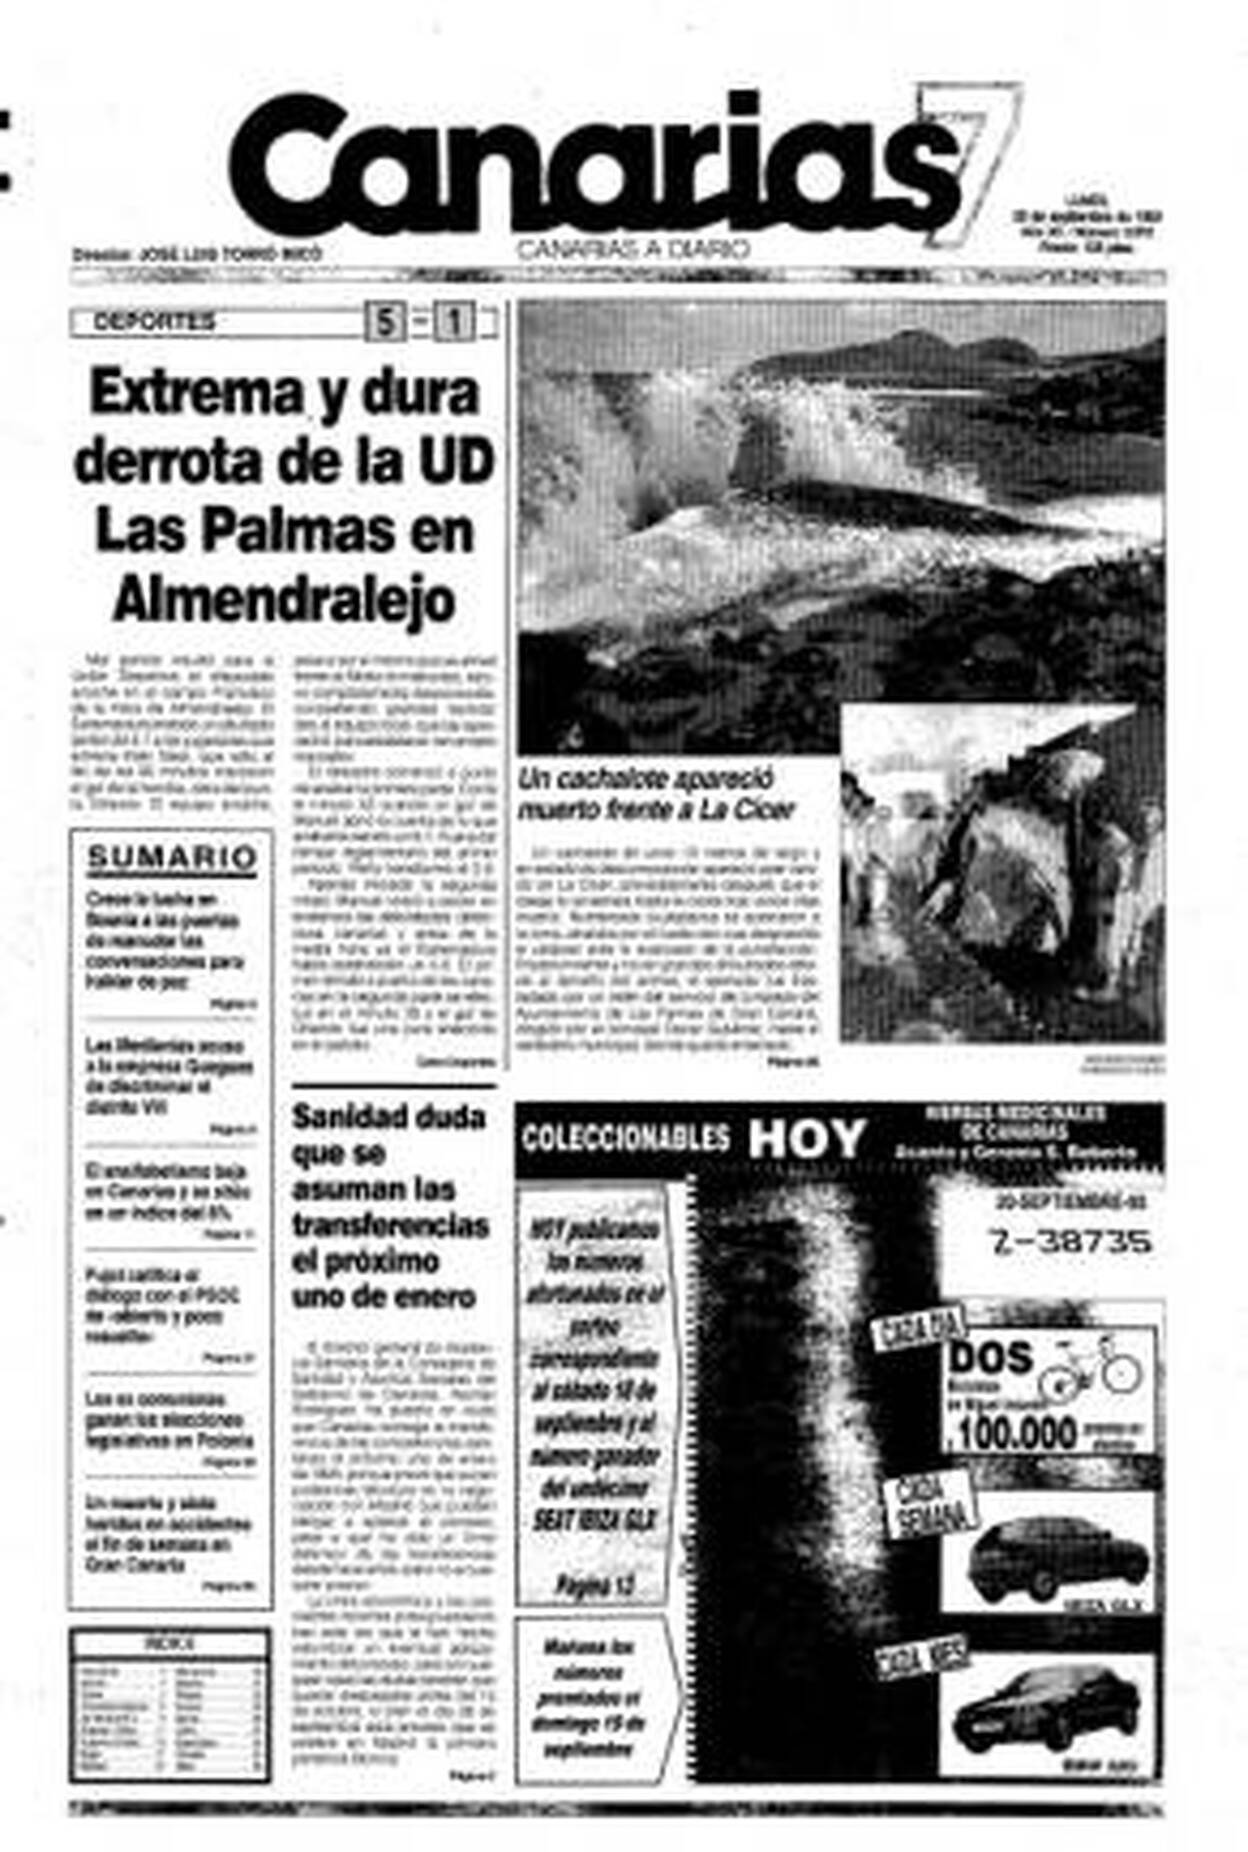 Hace 25 años en Canarias7